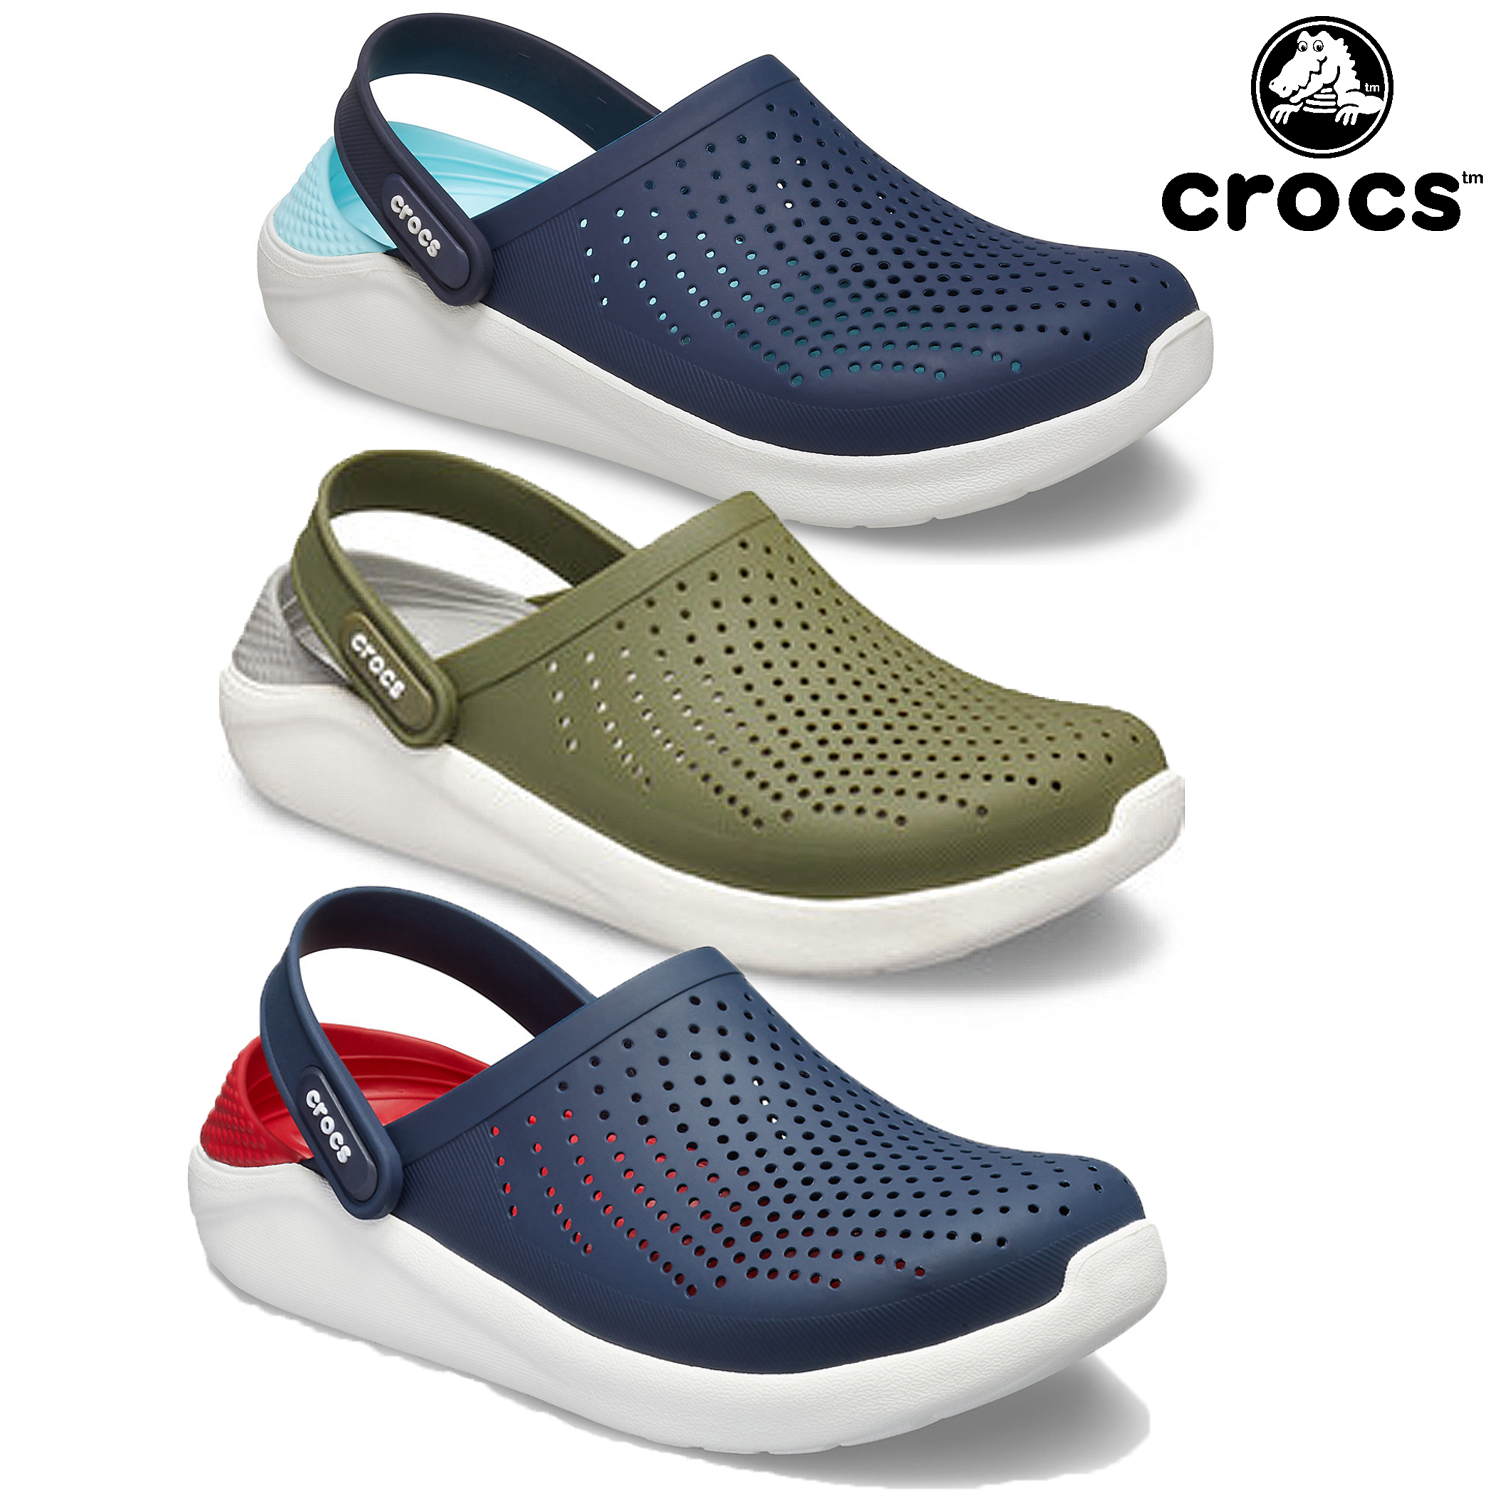 crocs soft